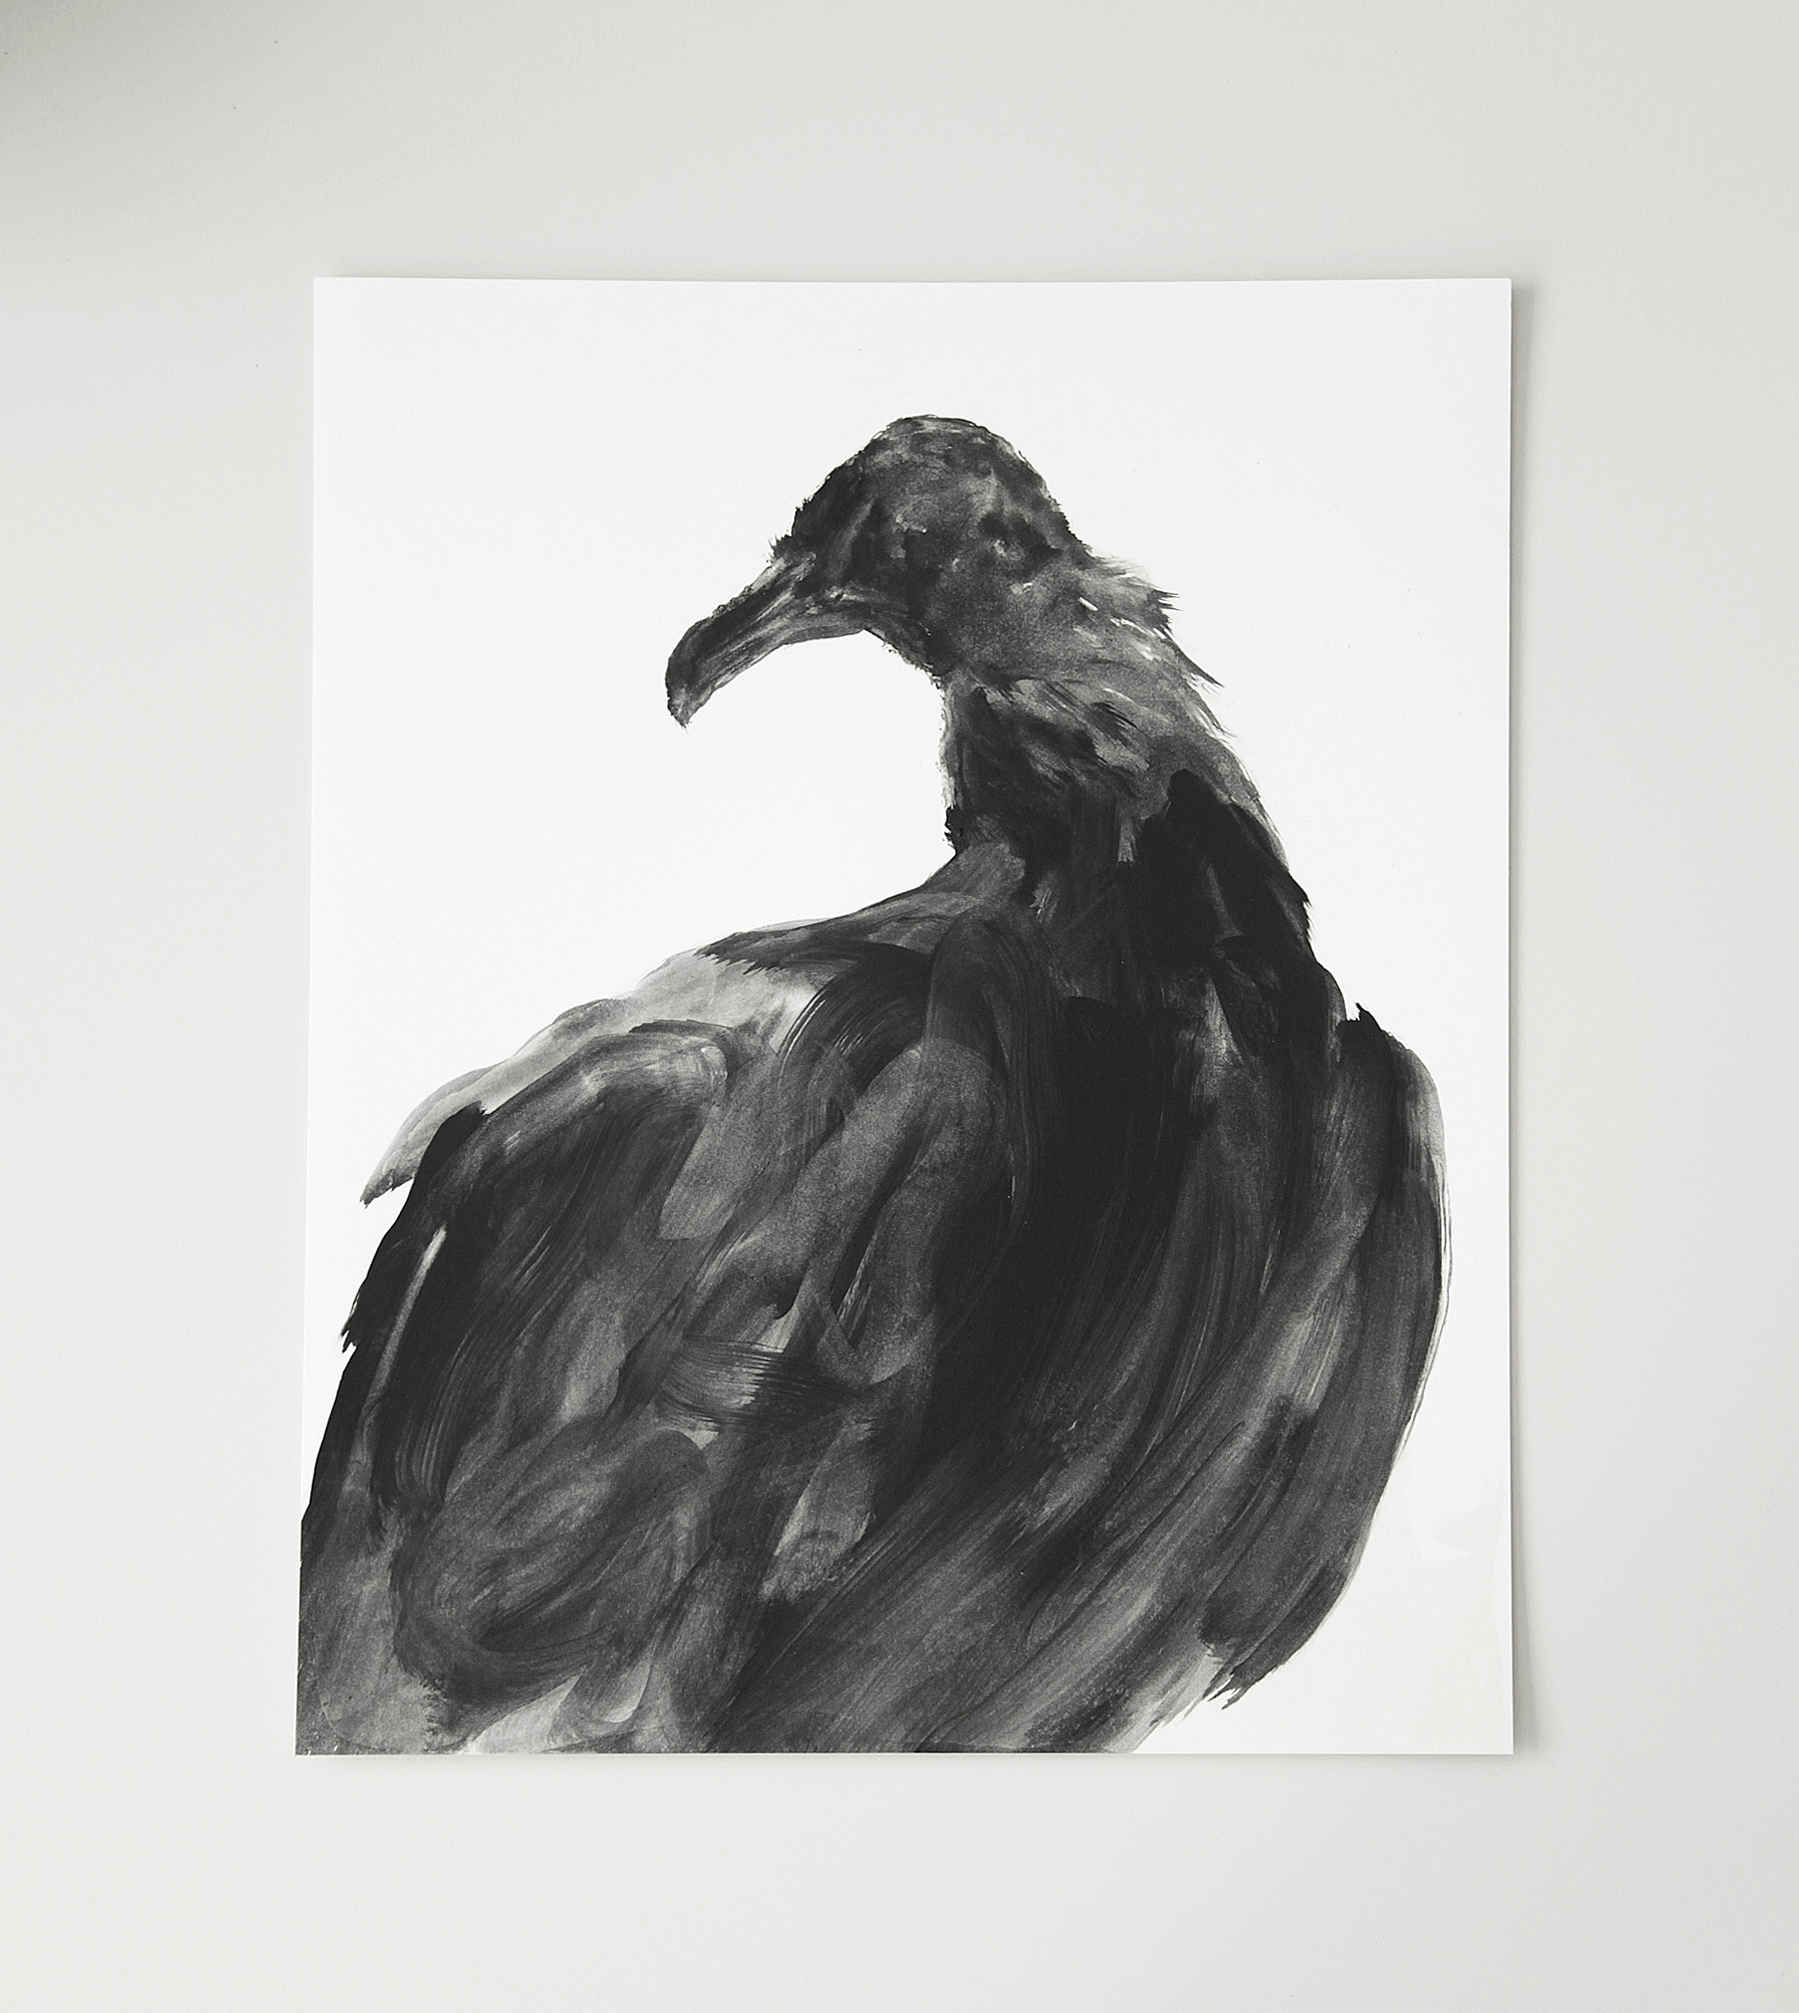  Vautour / Vulture  Huile sur papier / Oil on paper  12 X 16 in / 30 X 40 cm    